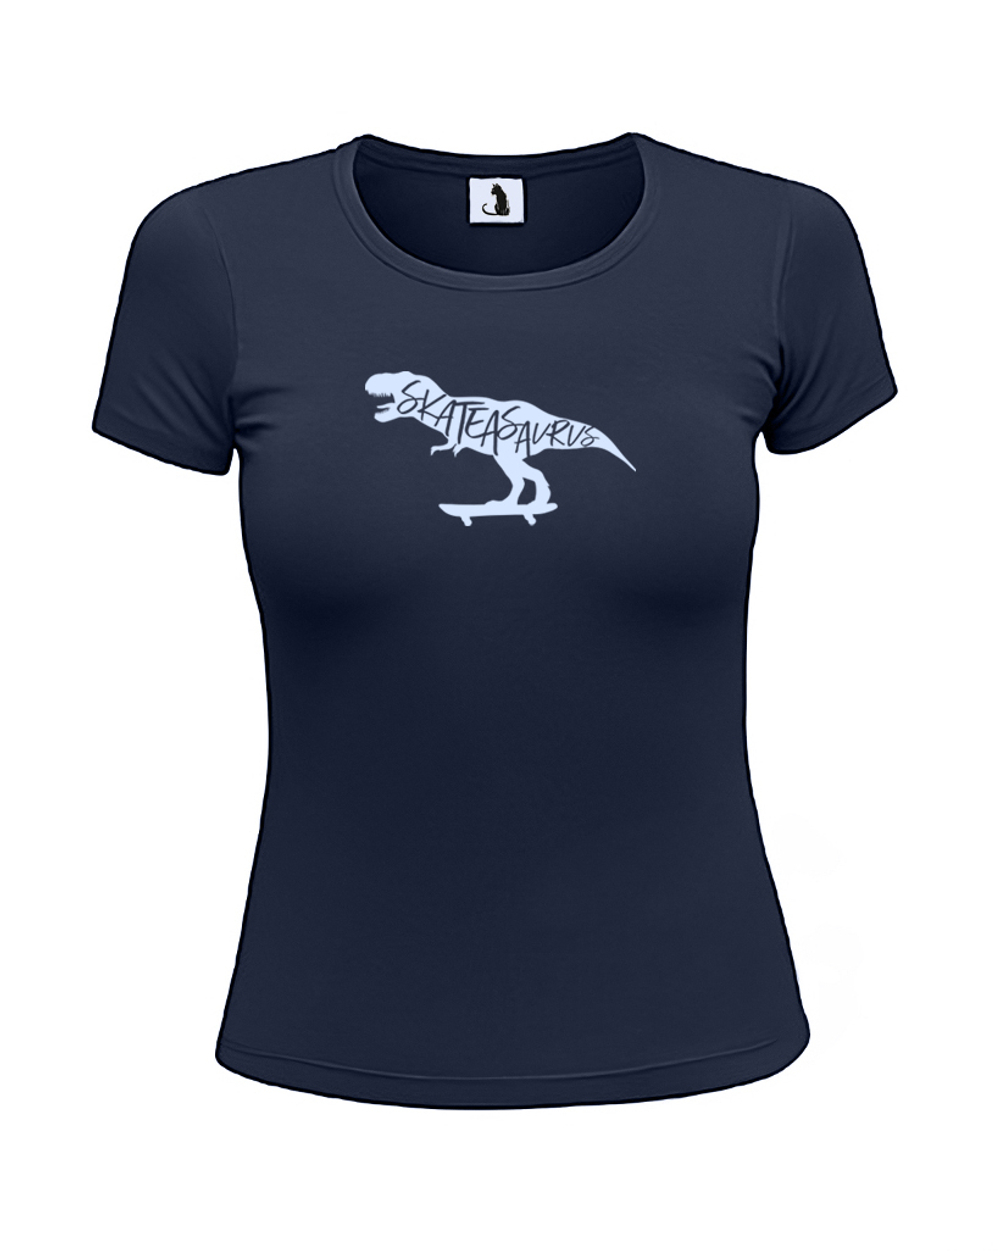 Футболка Skateasaurus женская приталенная темно-синяя с голубым рисунком